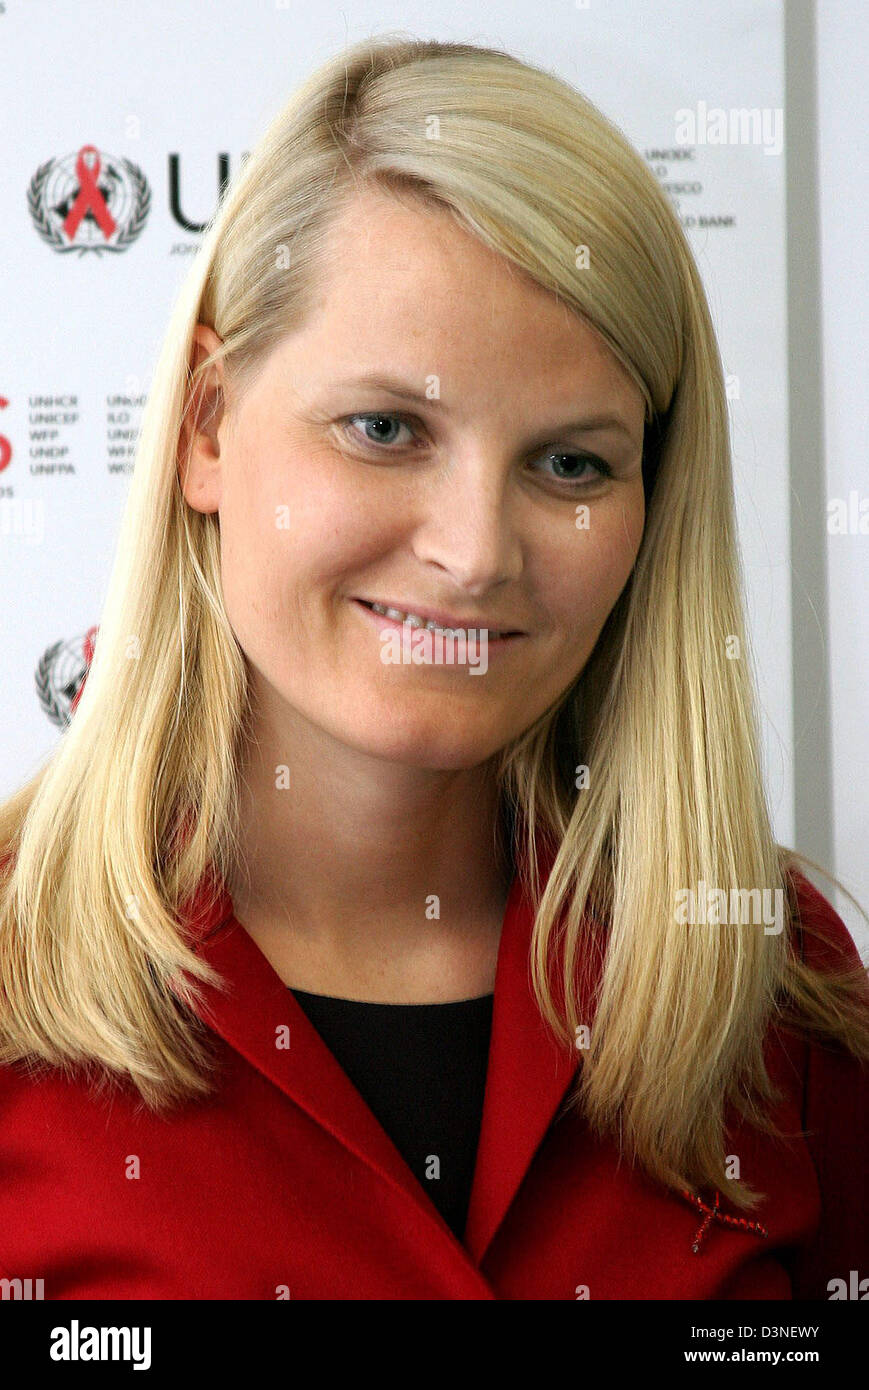 Kronprinzessin Mette-Marit von Norwegen besucht UNAIDS in Genf, Schweiz, Mittwoch, 25. Januar 2006. Mette-Marit ist Sonderbotschafter des UN-Programms zur Bekämpfung der Pandemie HIV. Foto: Albert van der Werf (Niederlande) Stockfoto